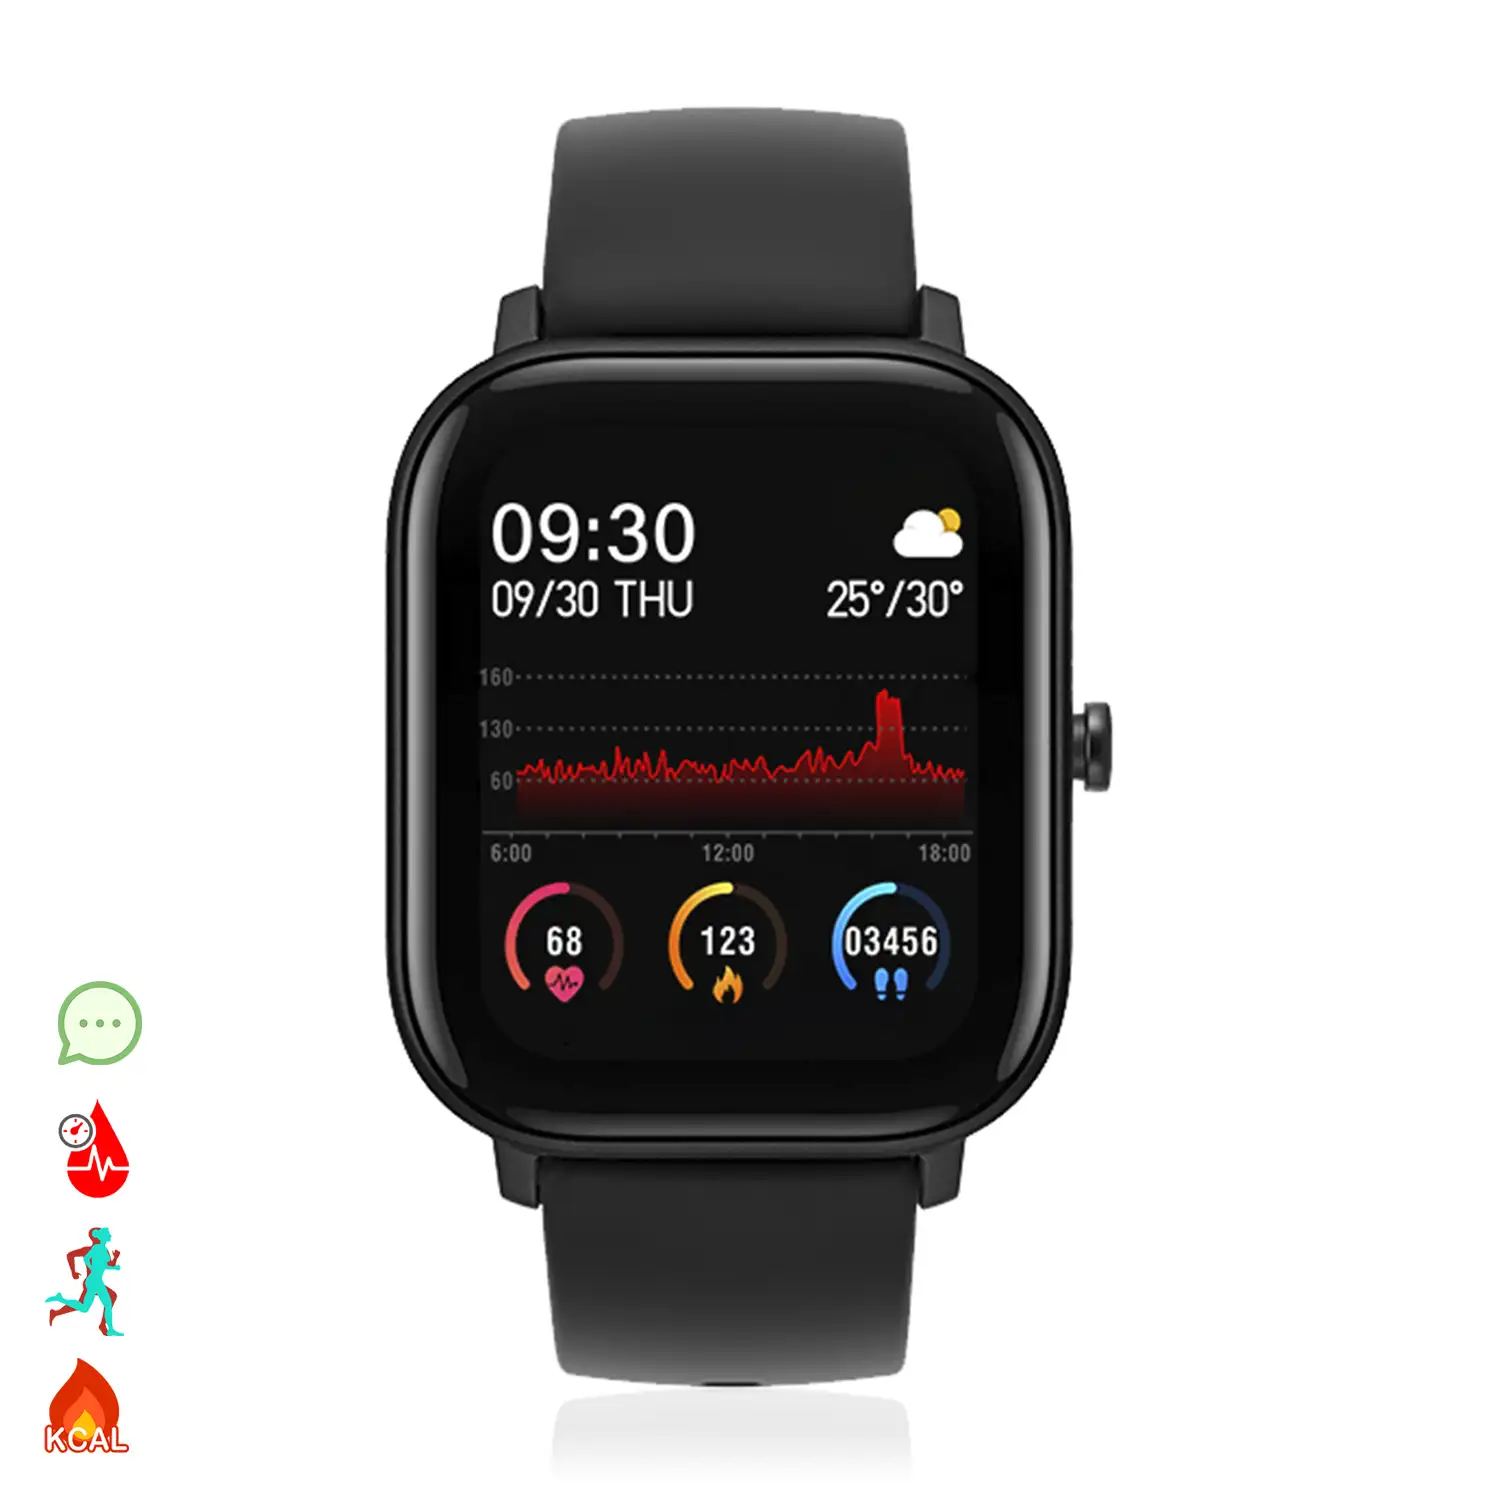 Smartwatch AK-P8 con monitorización de ritmo cardiaco, presión sanguínea, oxígeno en sangre, modo multideportivo y notificaciones.